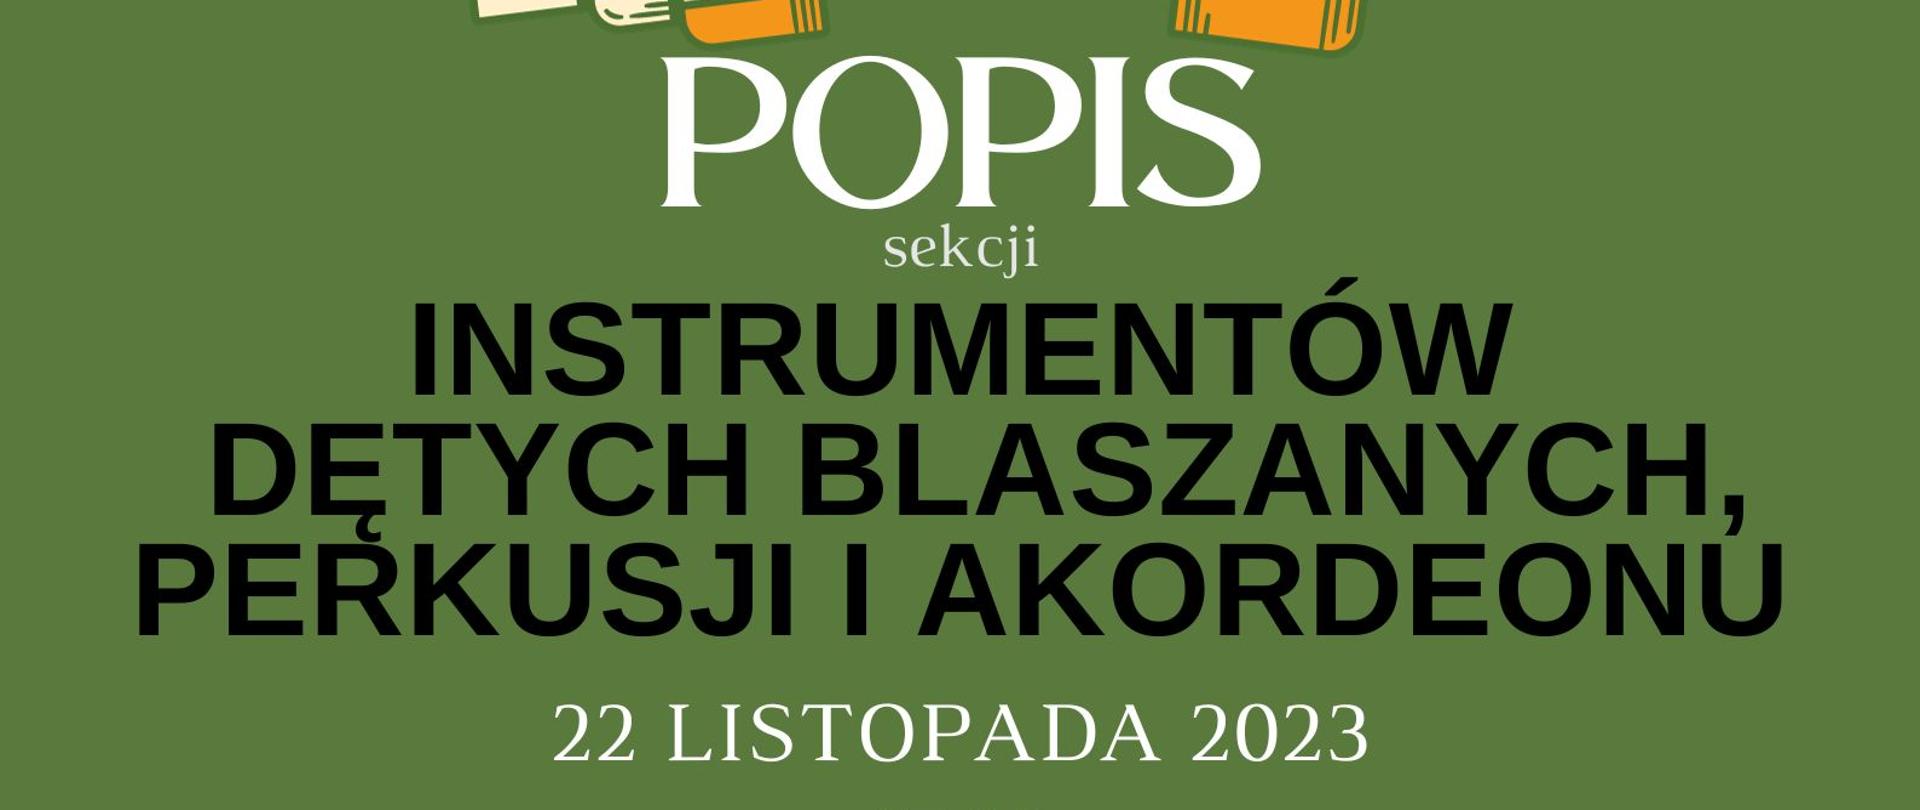 Plakat informacyjny dotyczący popisu sekcji instrumentów dętych blaszanych, perkusji i akordeonu odbywającego się w dniu 22.11.2023 r. o godz. 17.00.